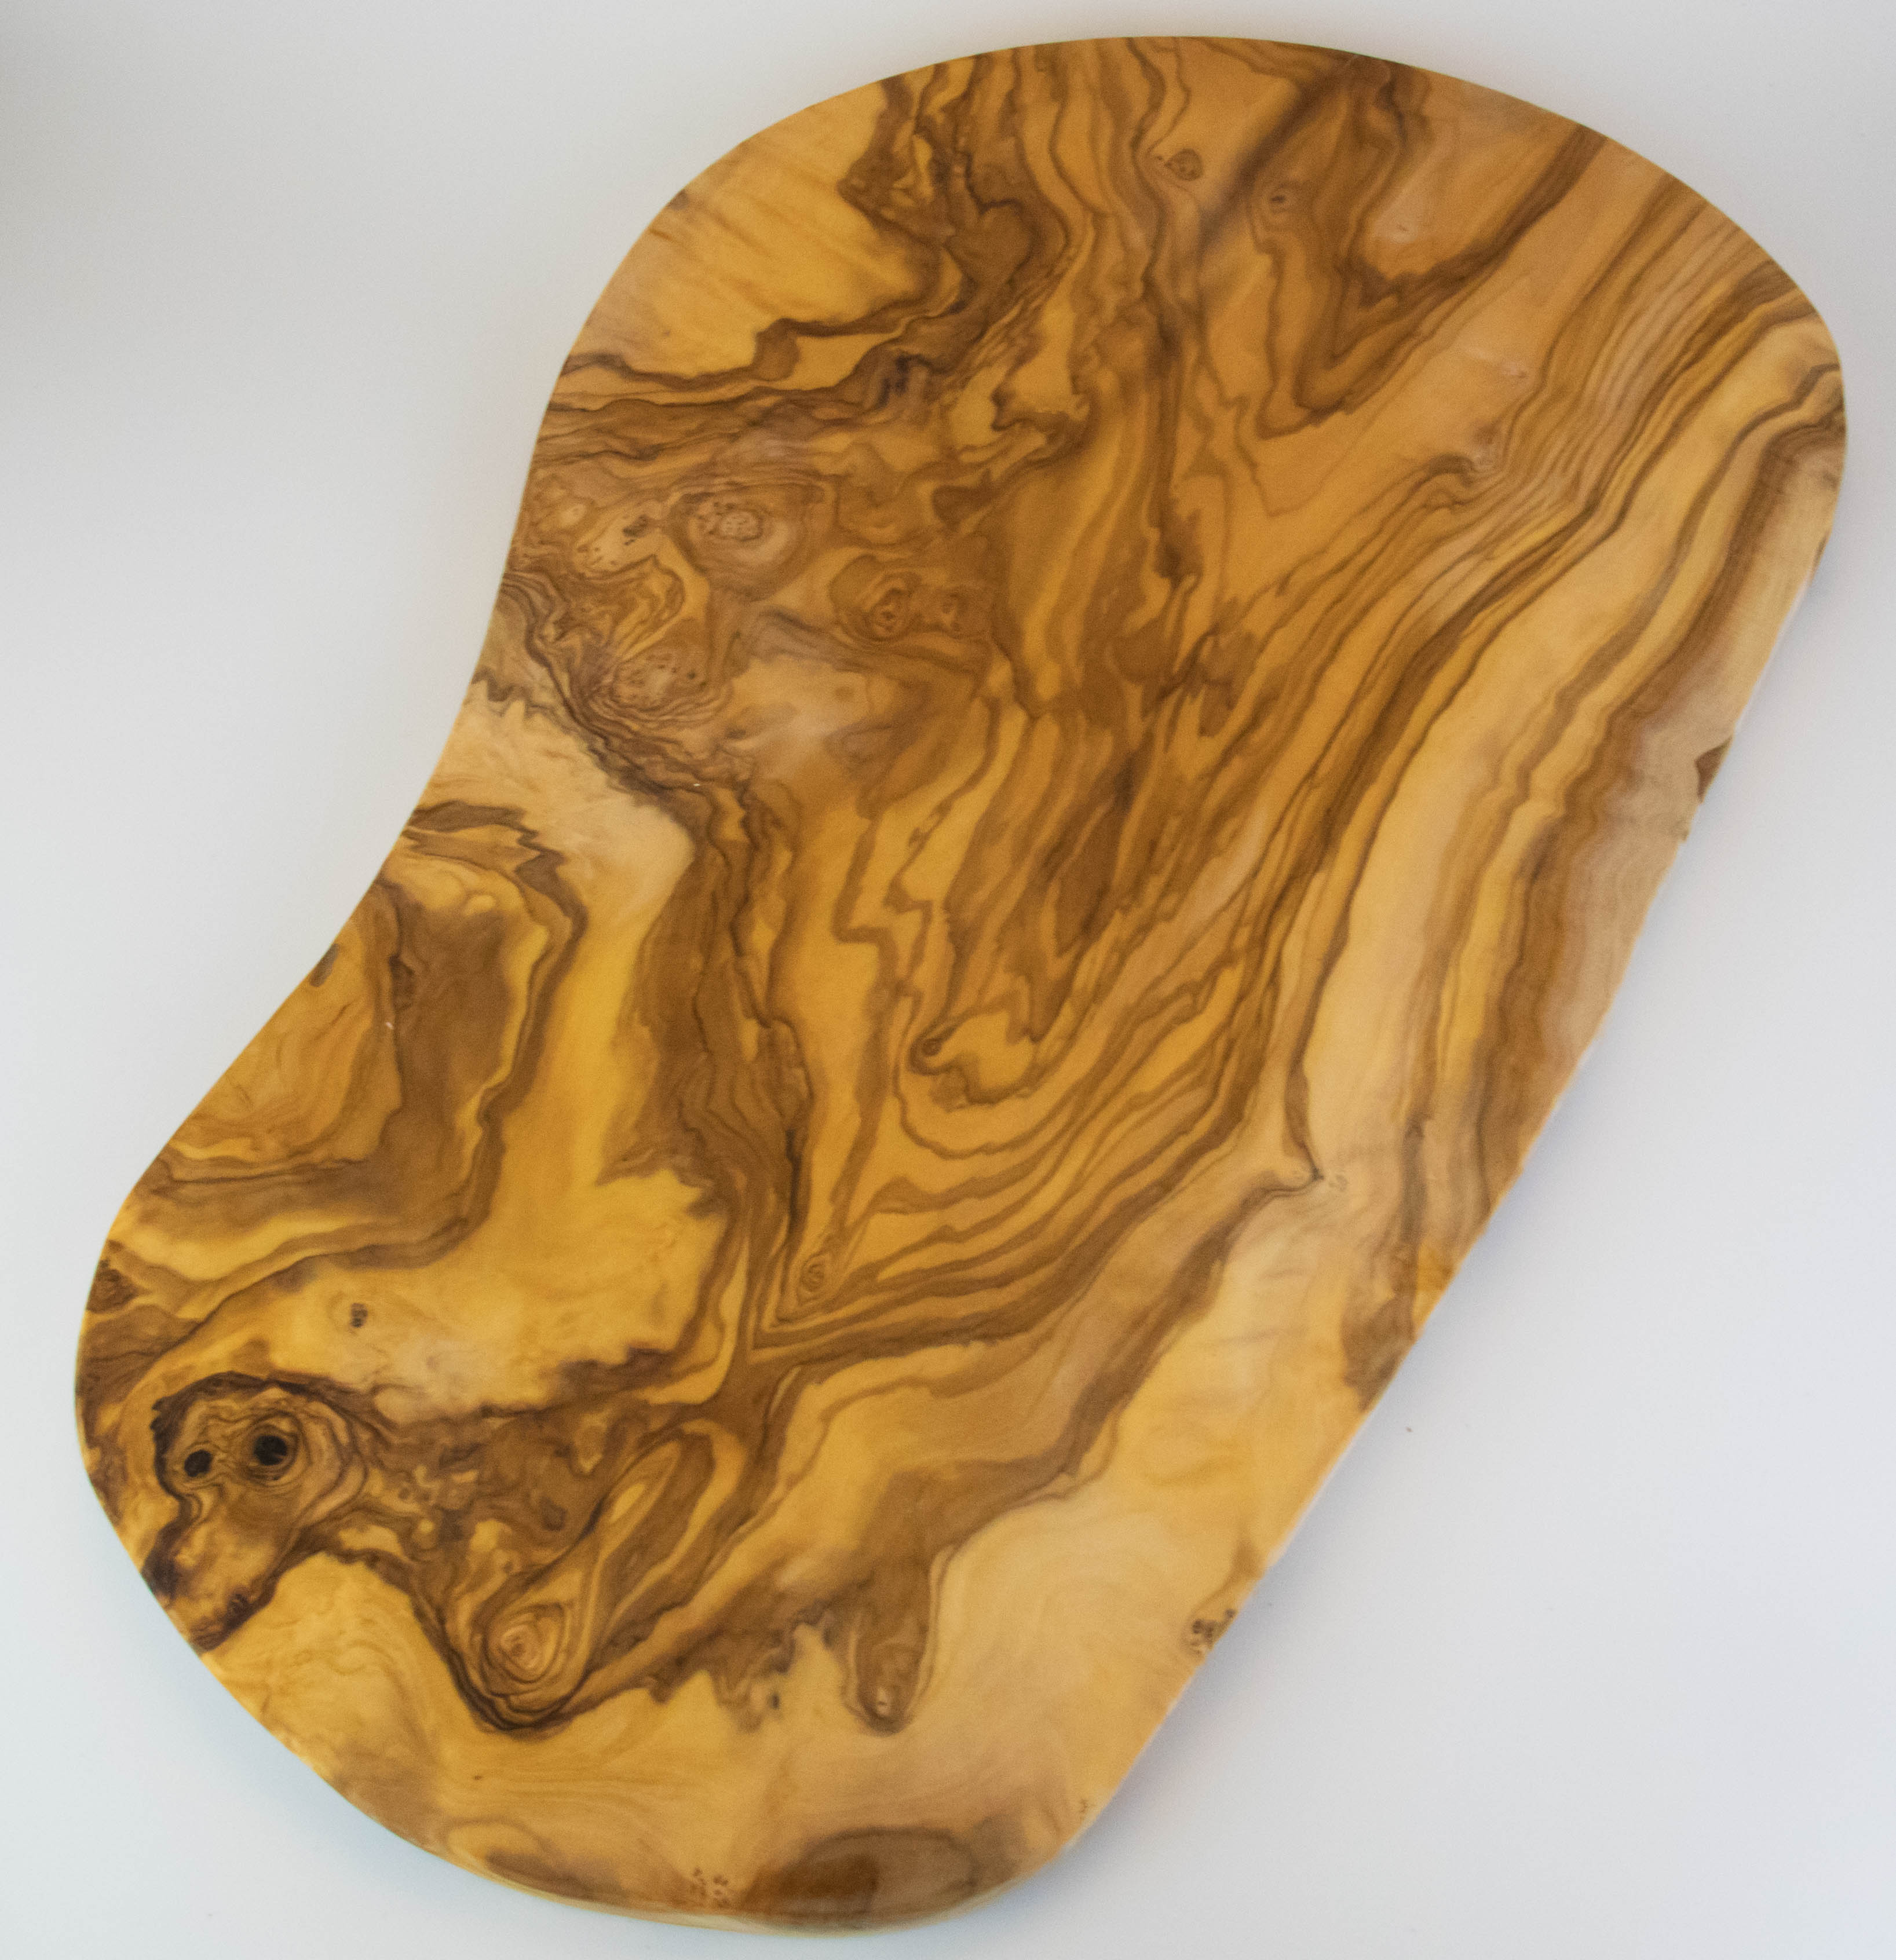 Grande planche à découper rustique en bois d'olivier d'une longueur de 55-60 cm.